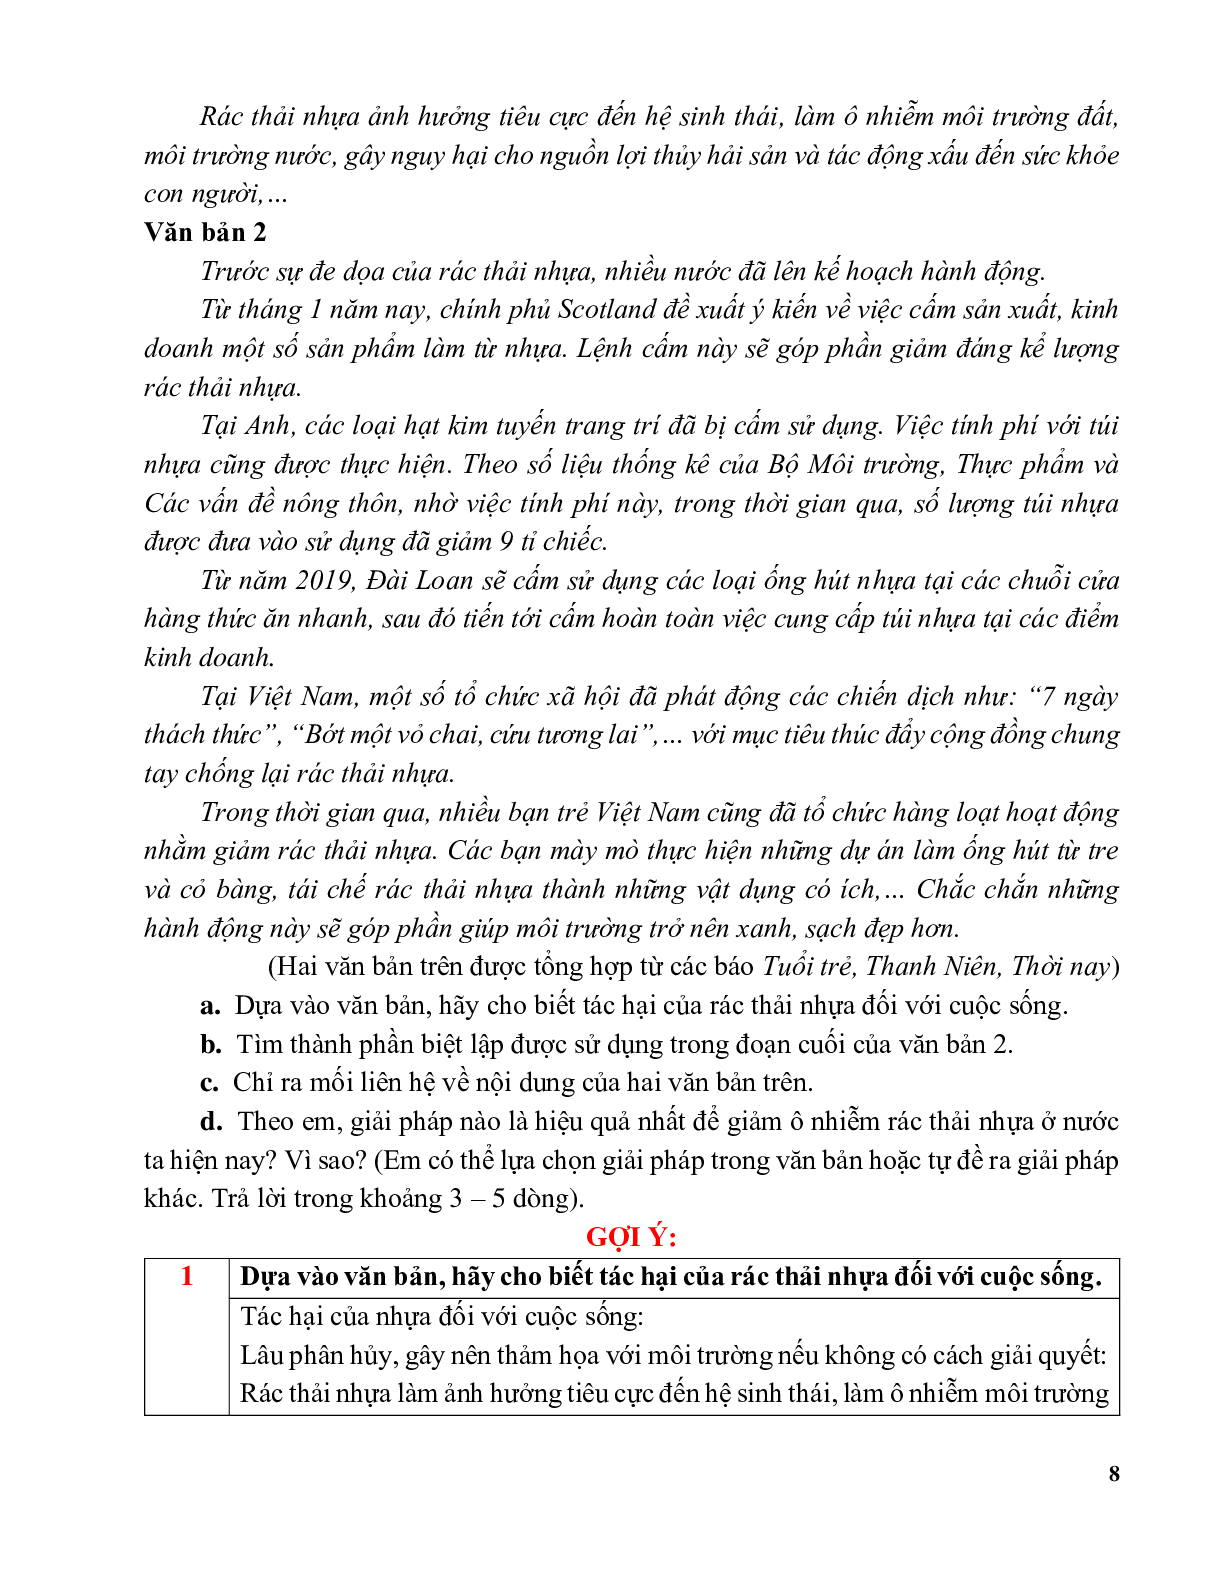 81 bộ đề đọc hiểu môn ngữ văn lớp 9 (trang 8)